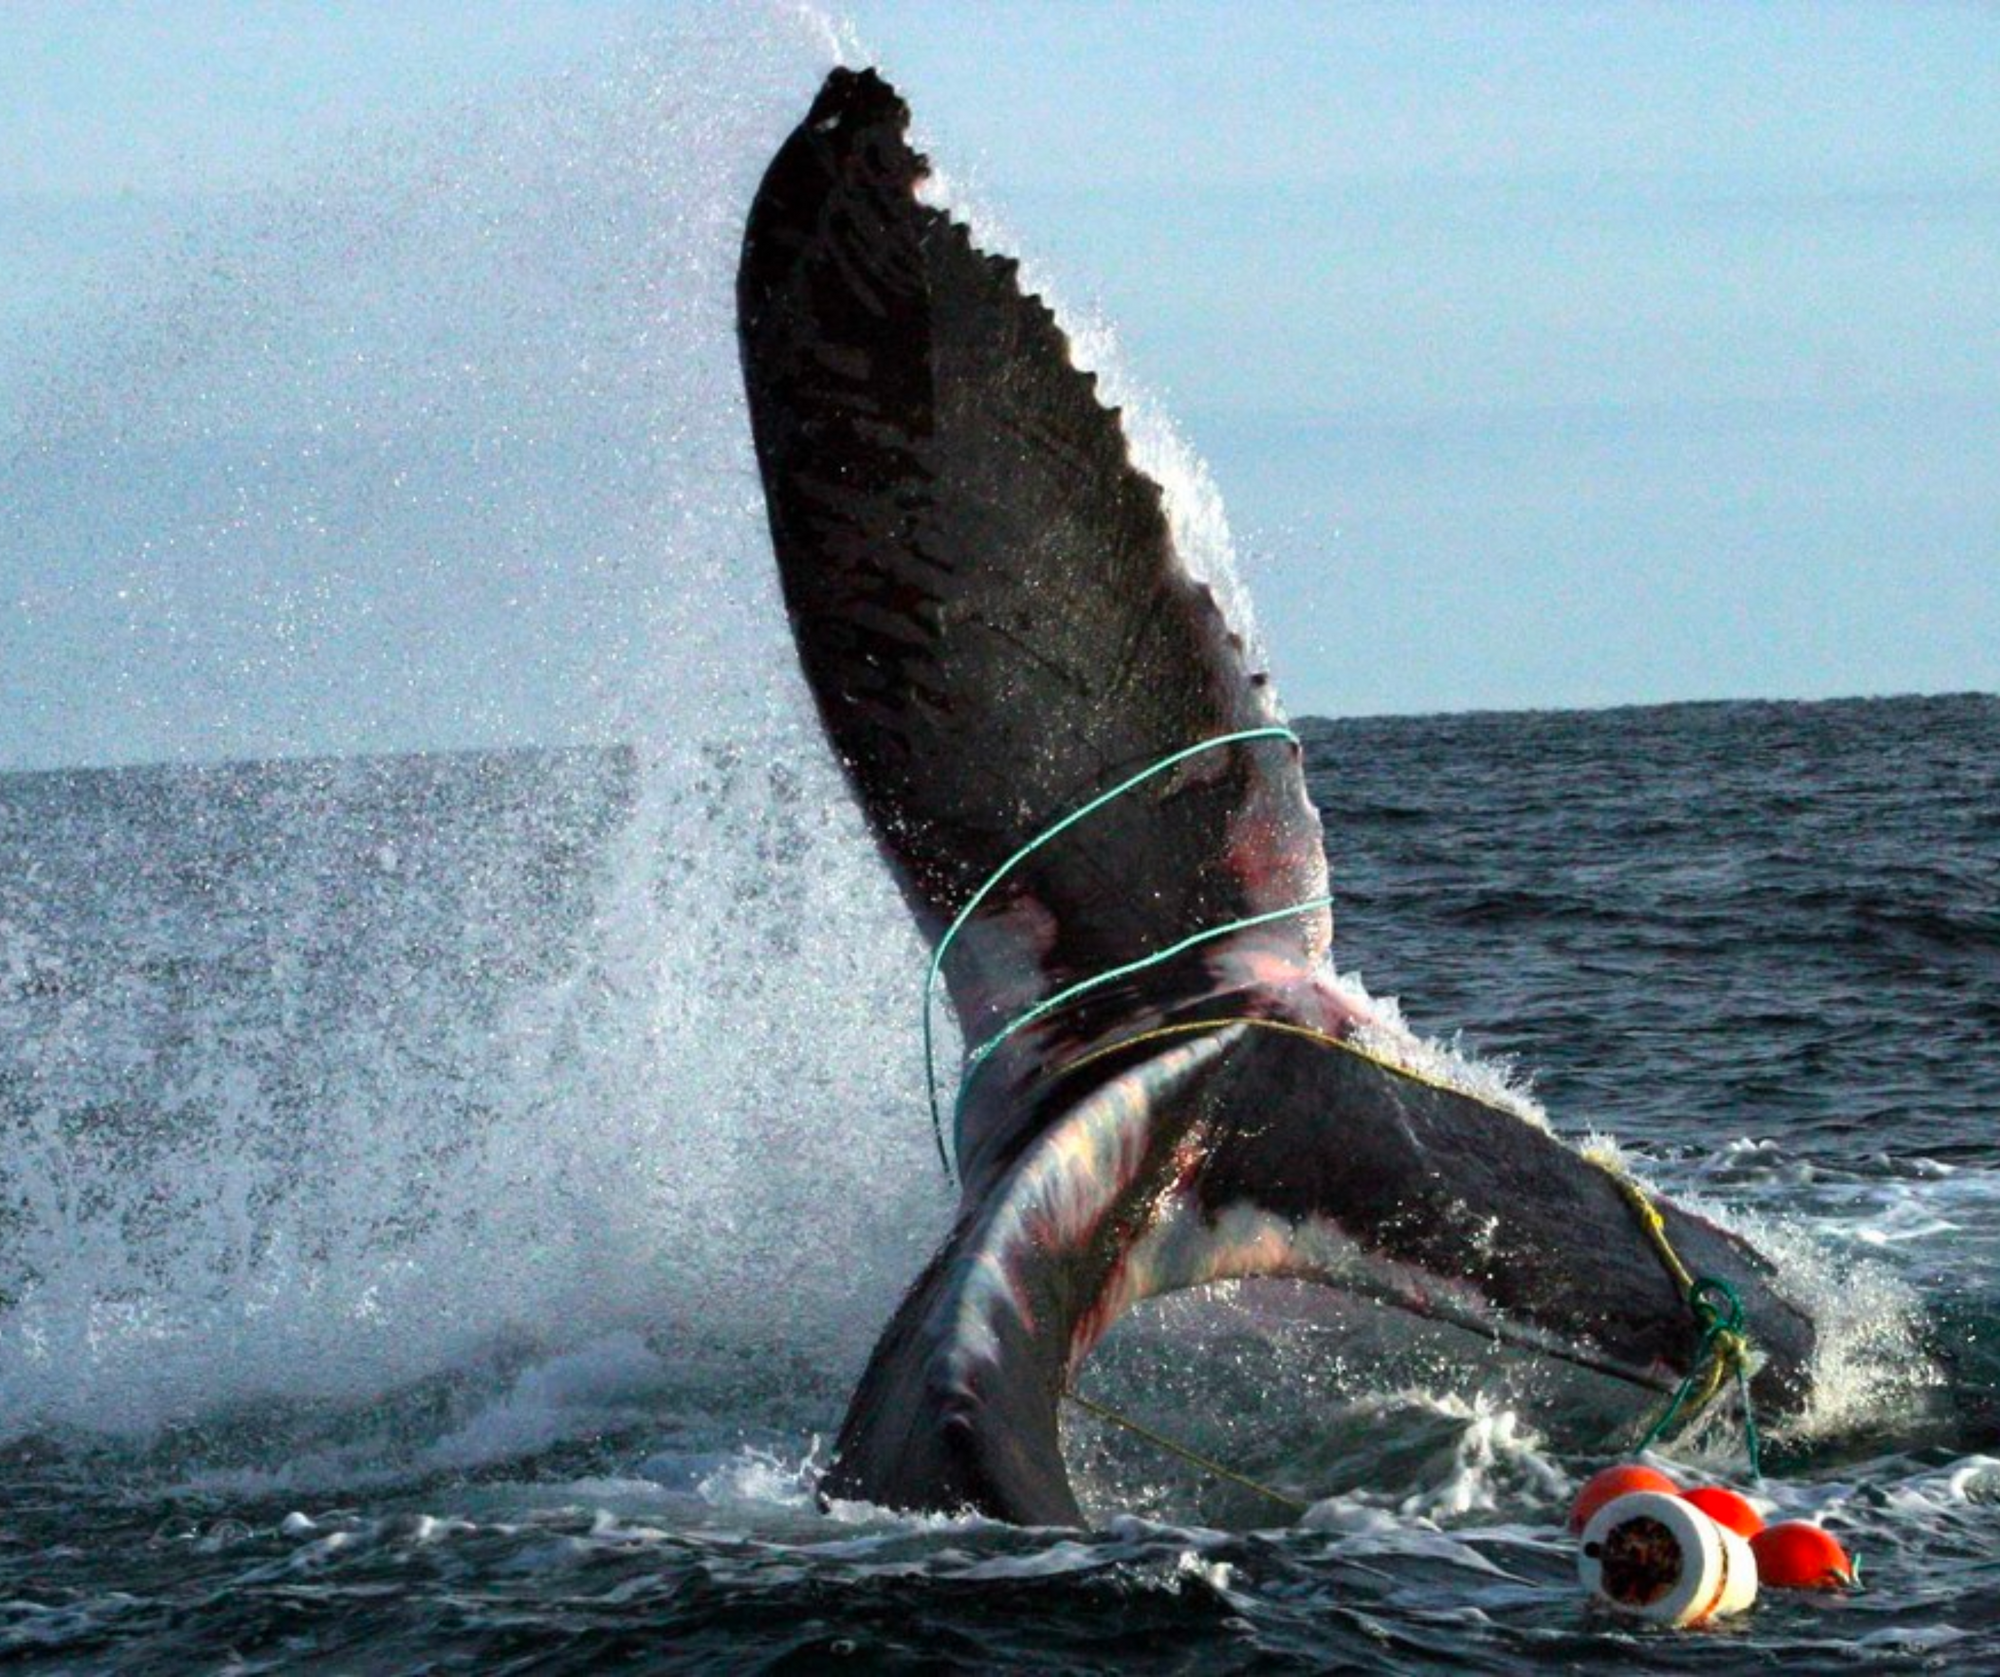 Hawaii's Humpback Whales Make a Return